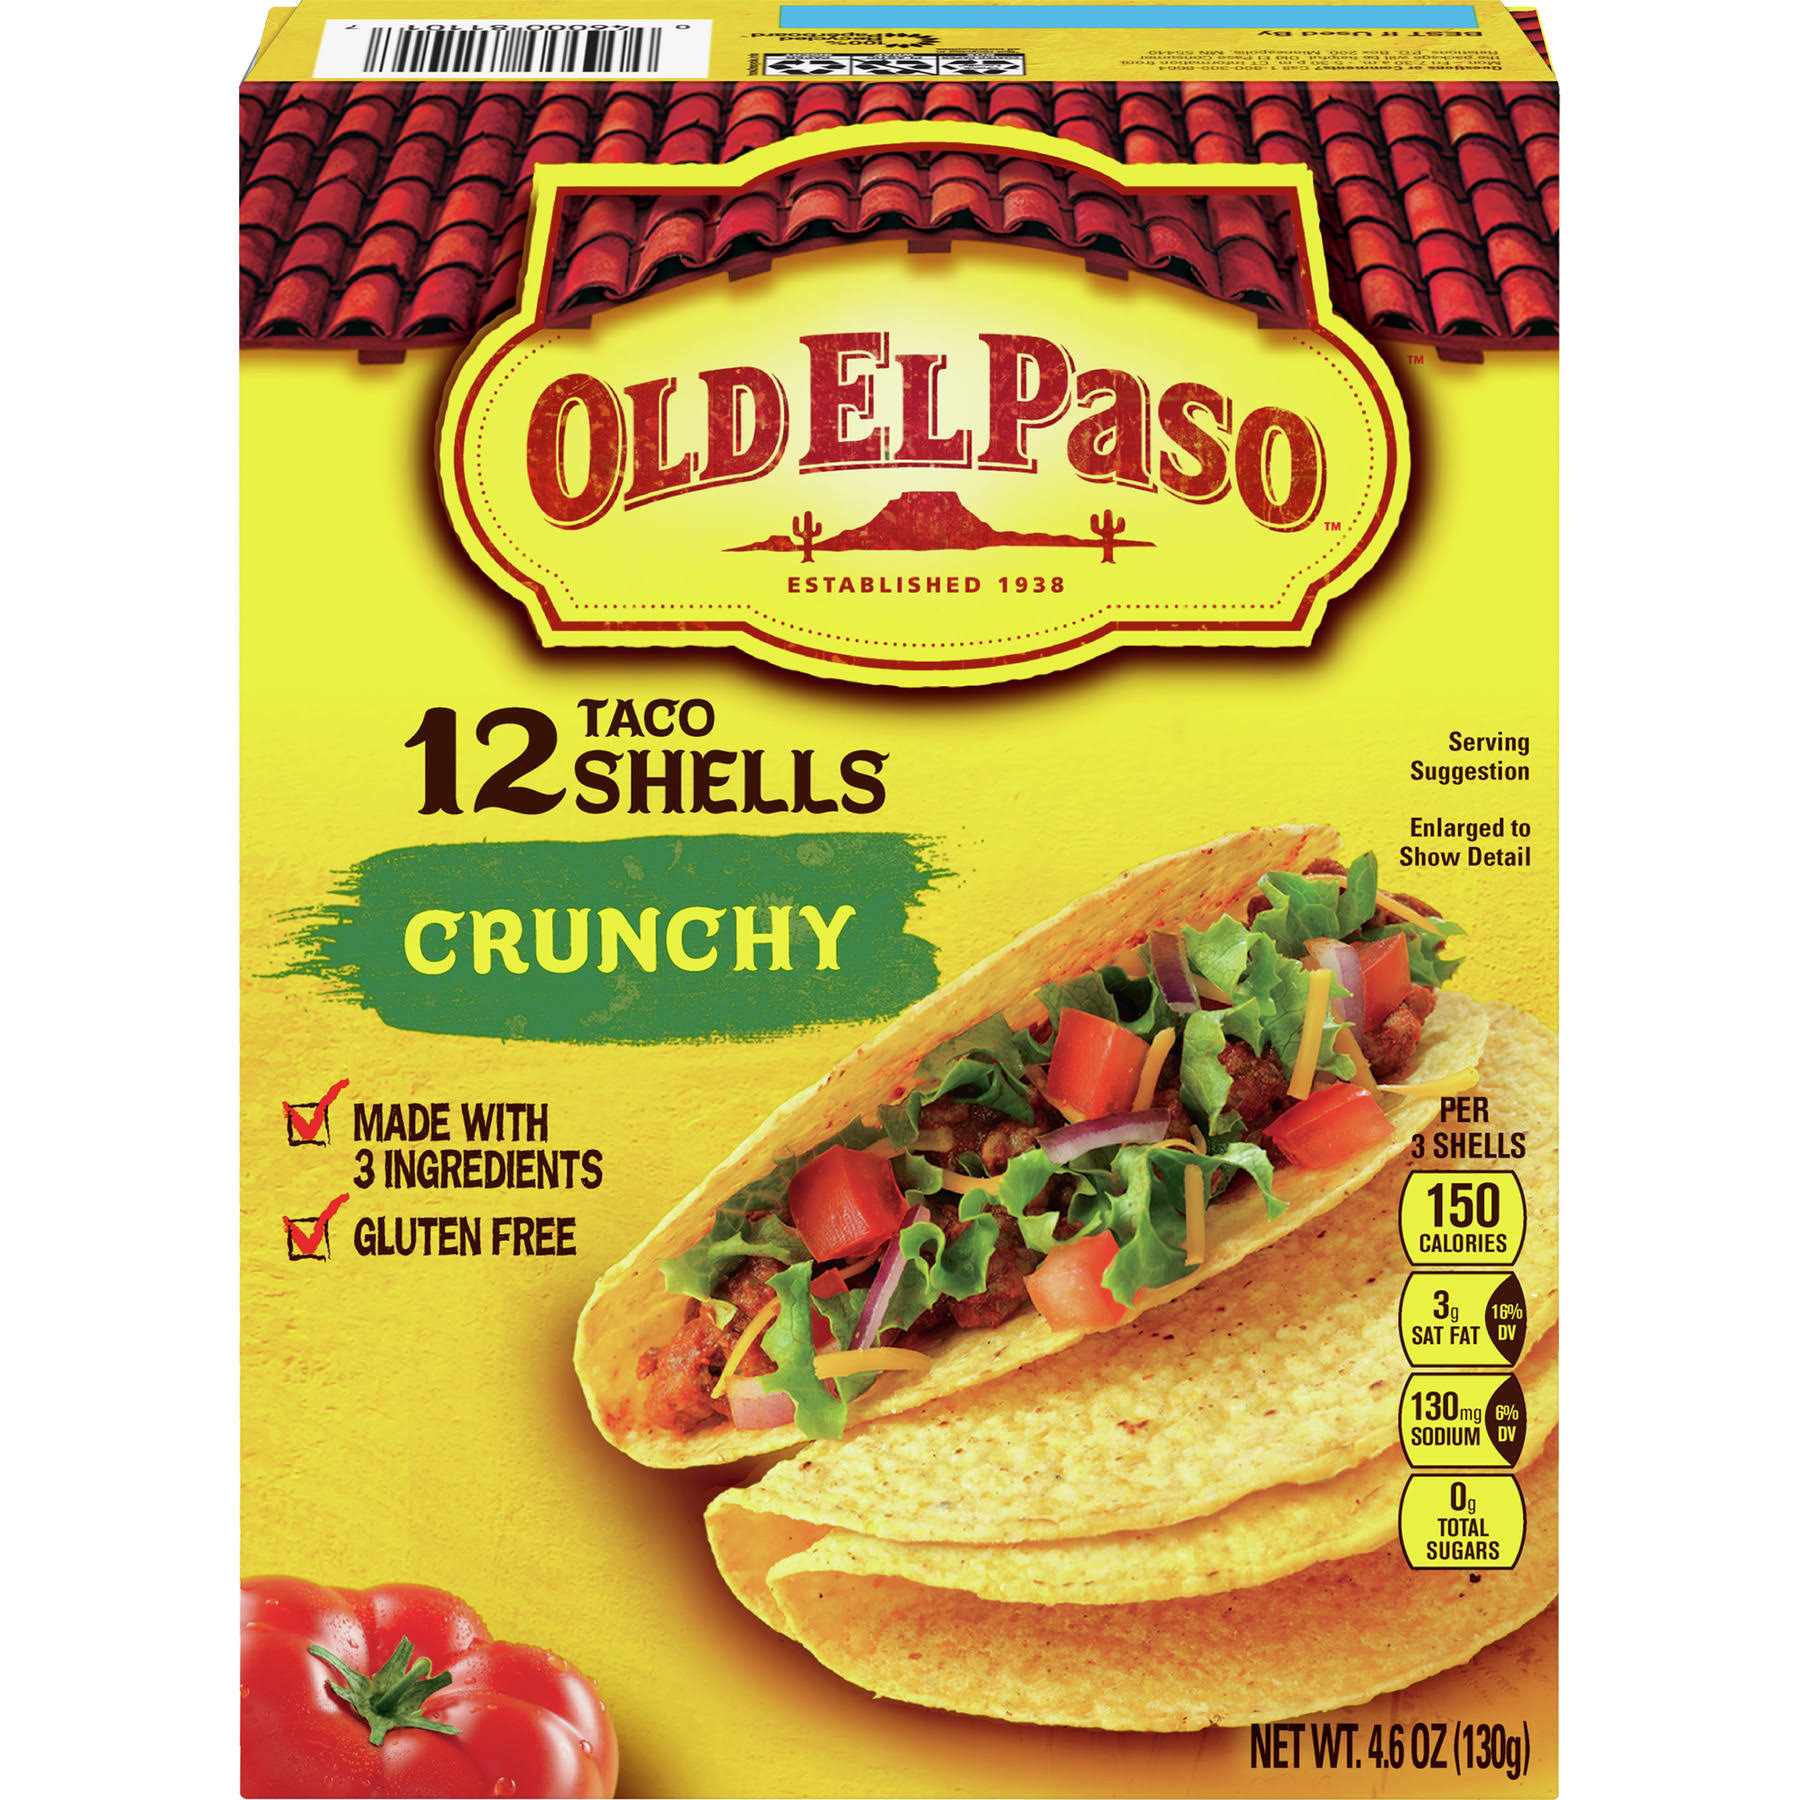 Old El Paso Crunchy Taco Shells - 12ct, 4.6oz